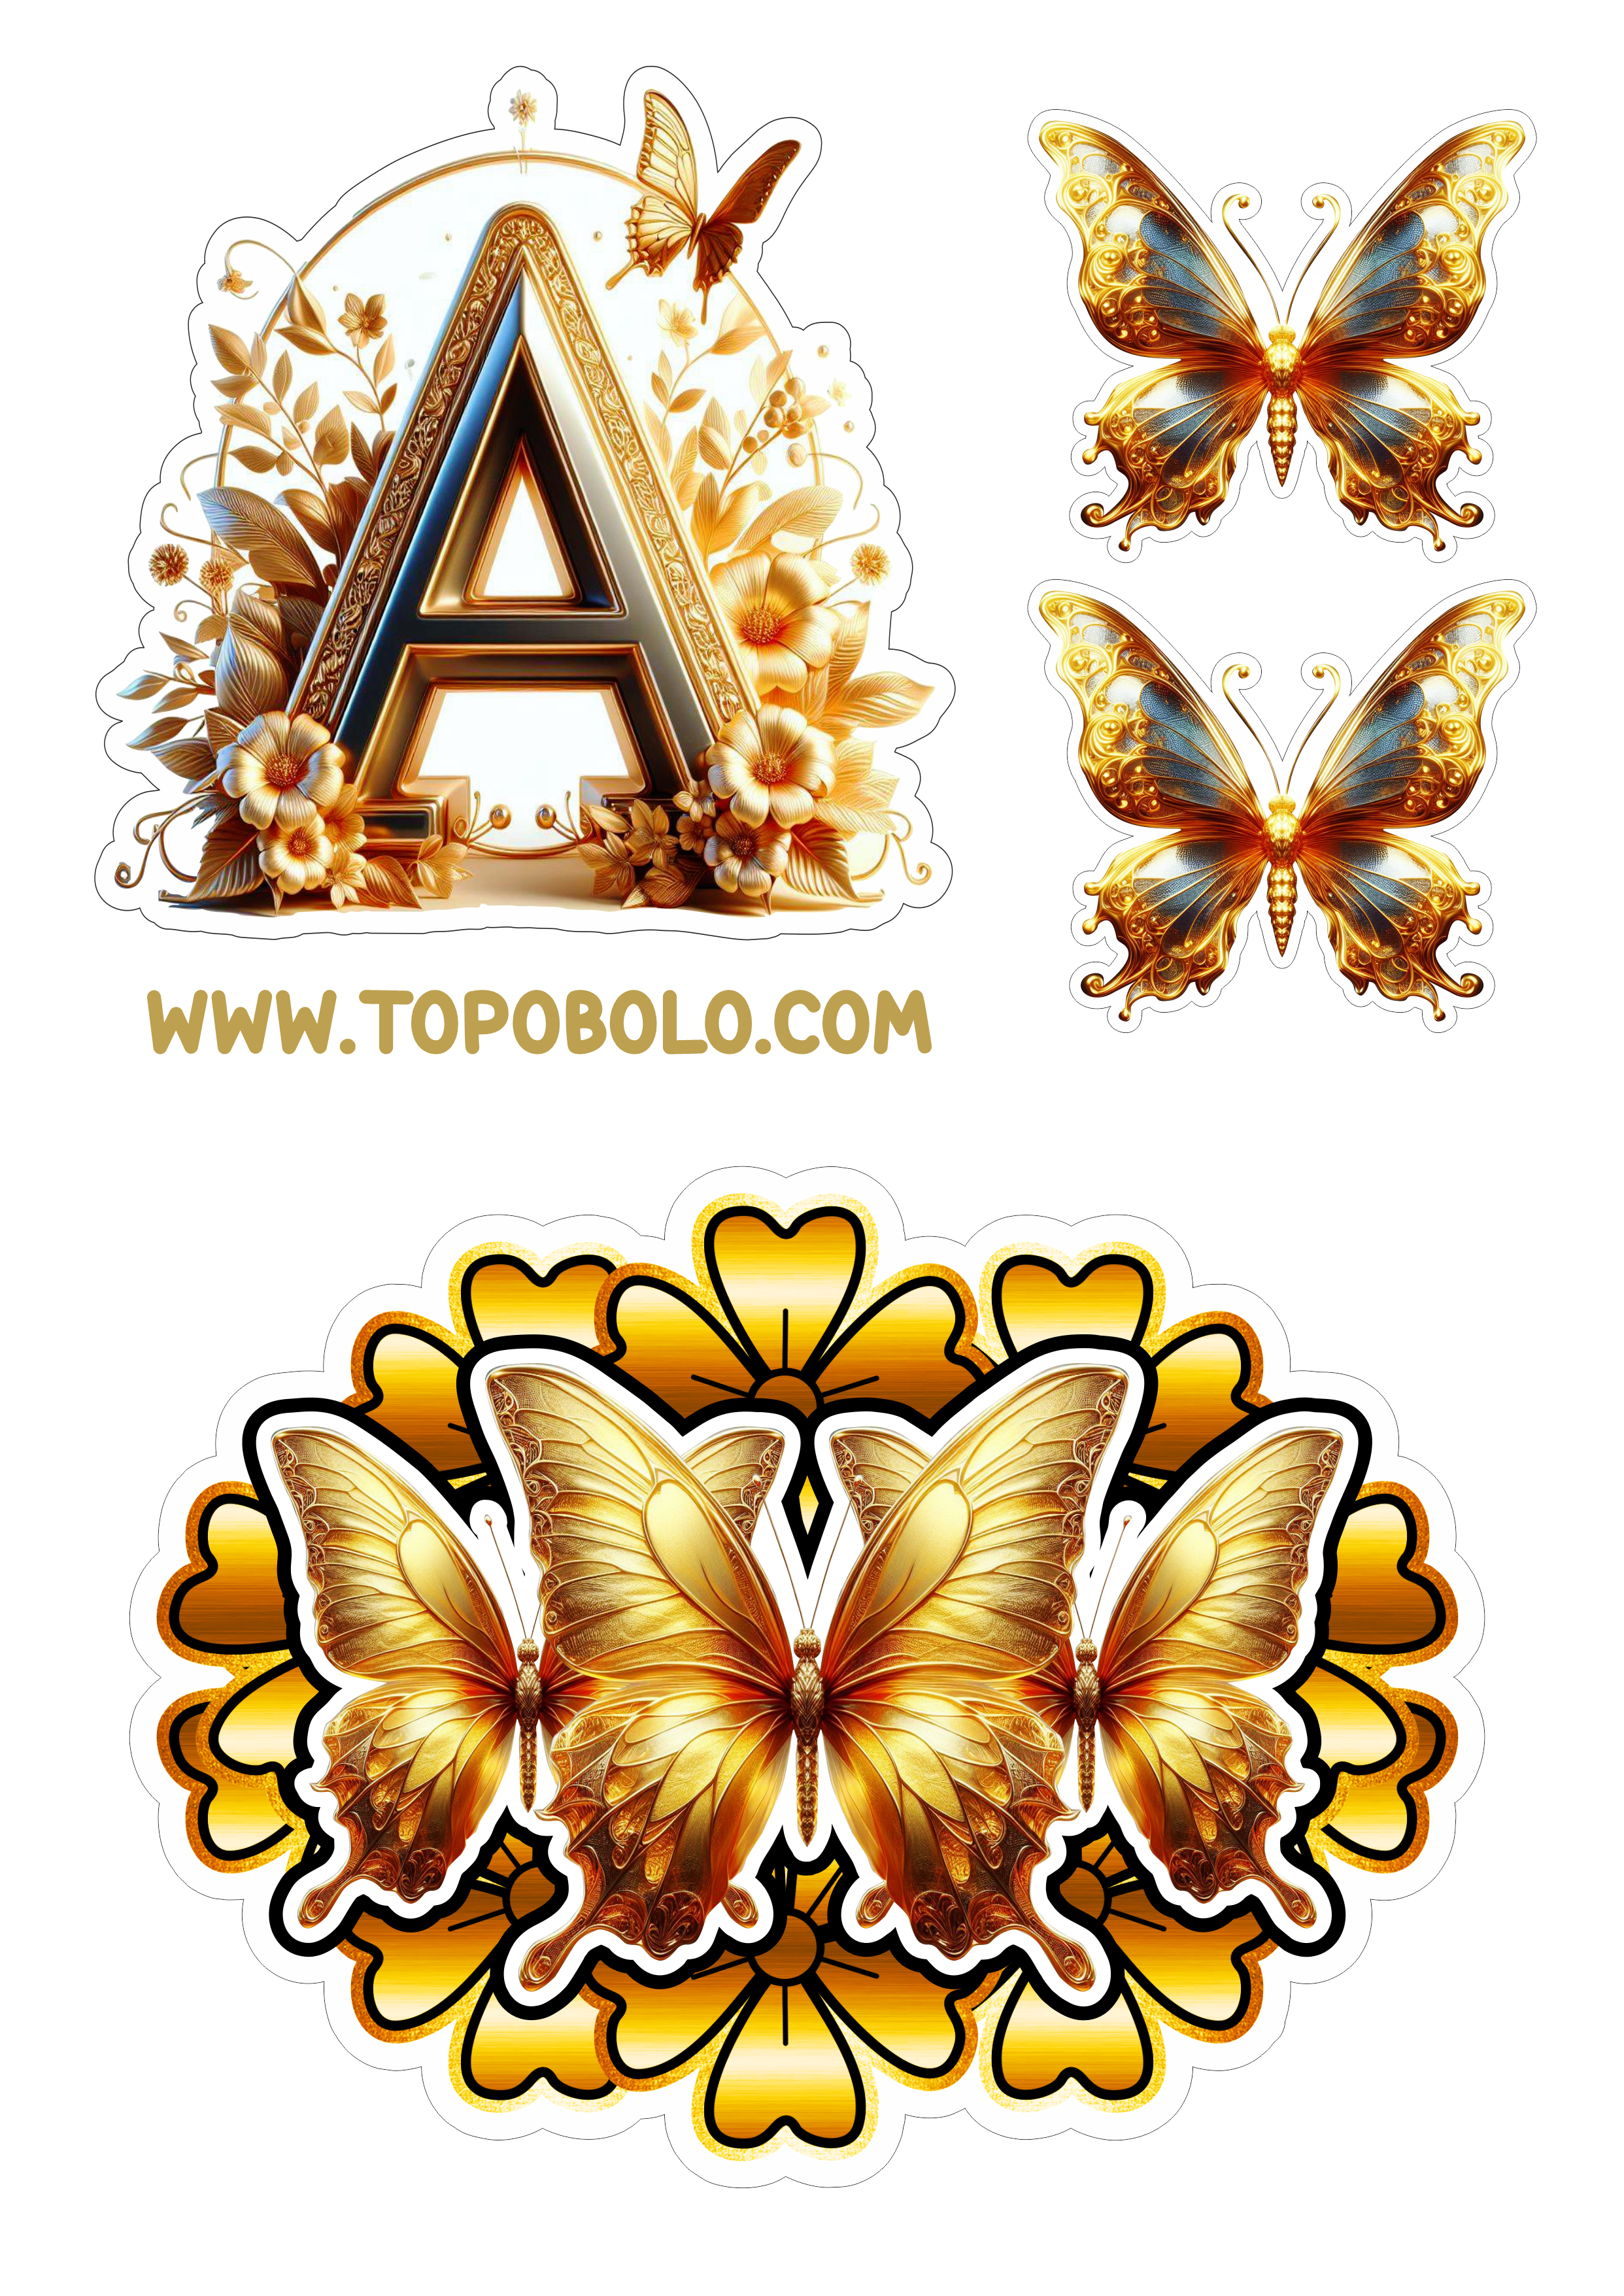 Topo de bolo letras douradas com borboletas e flores aniversário personalizado png